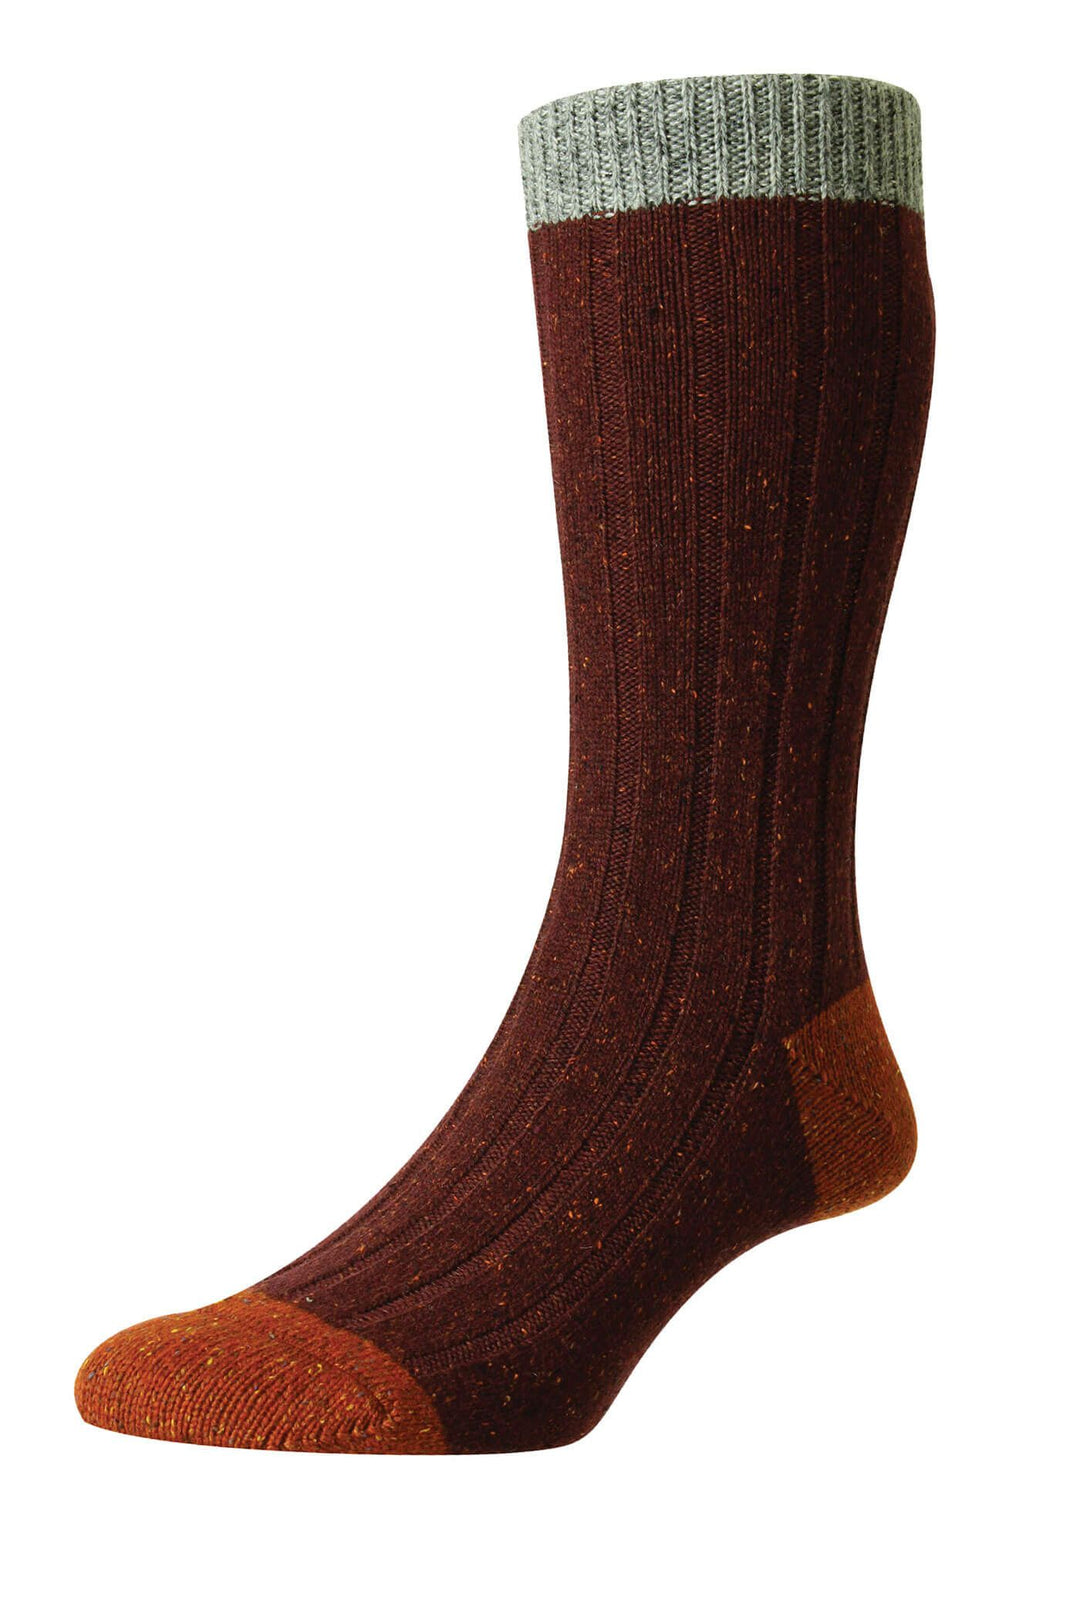 Pantherella Thornham Wool Socks